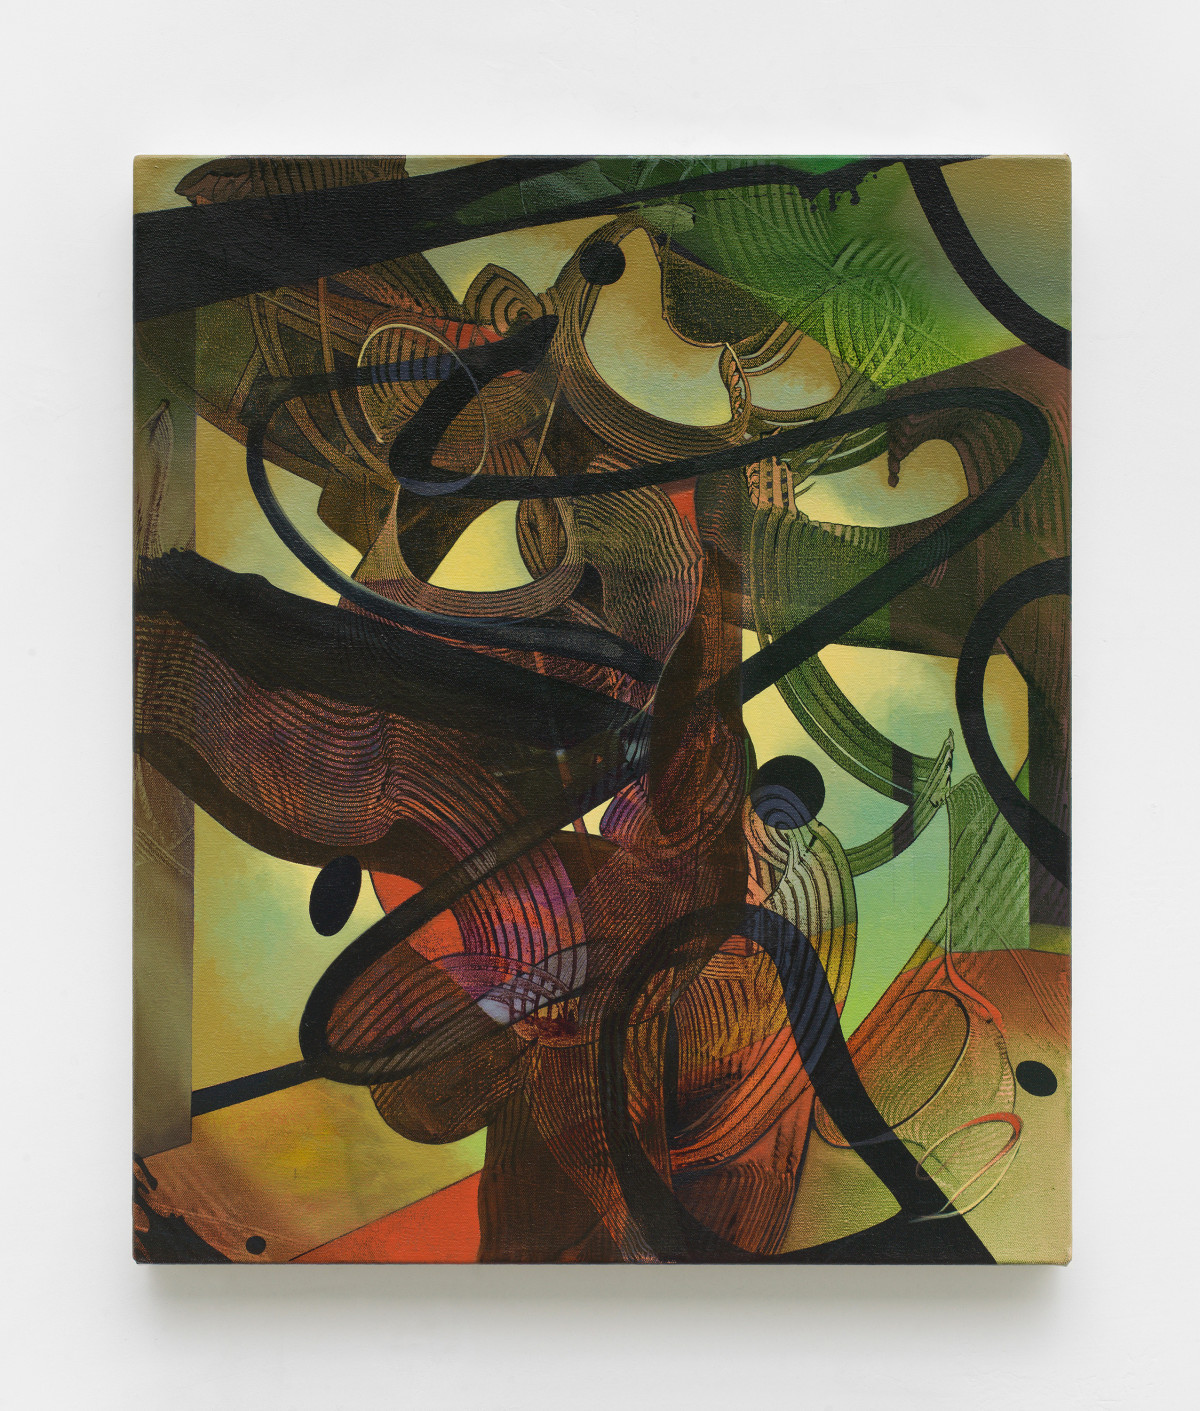 Sean Dawson, ‘Lantern’, 2015, oil on canvas